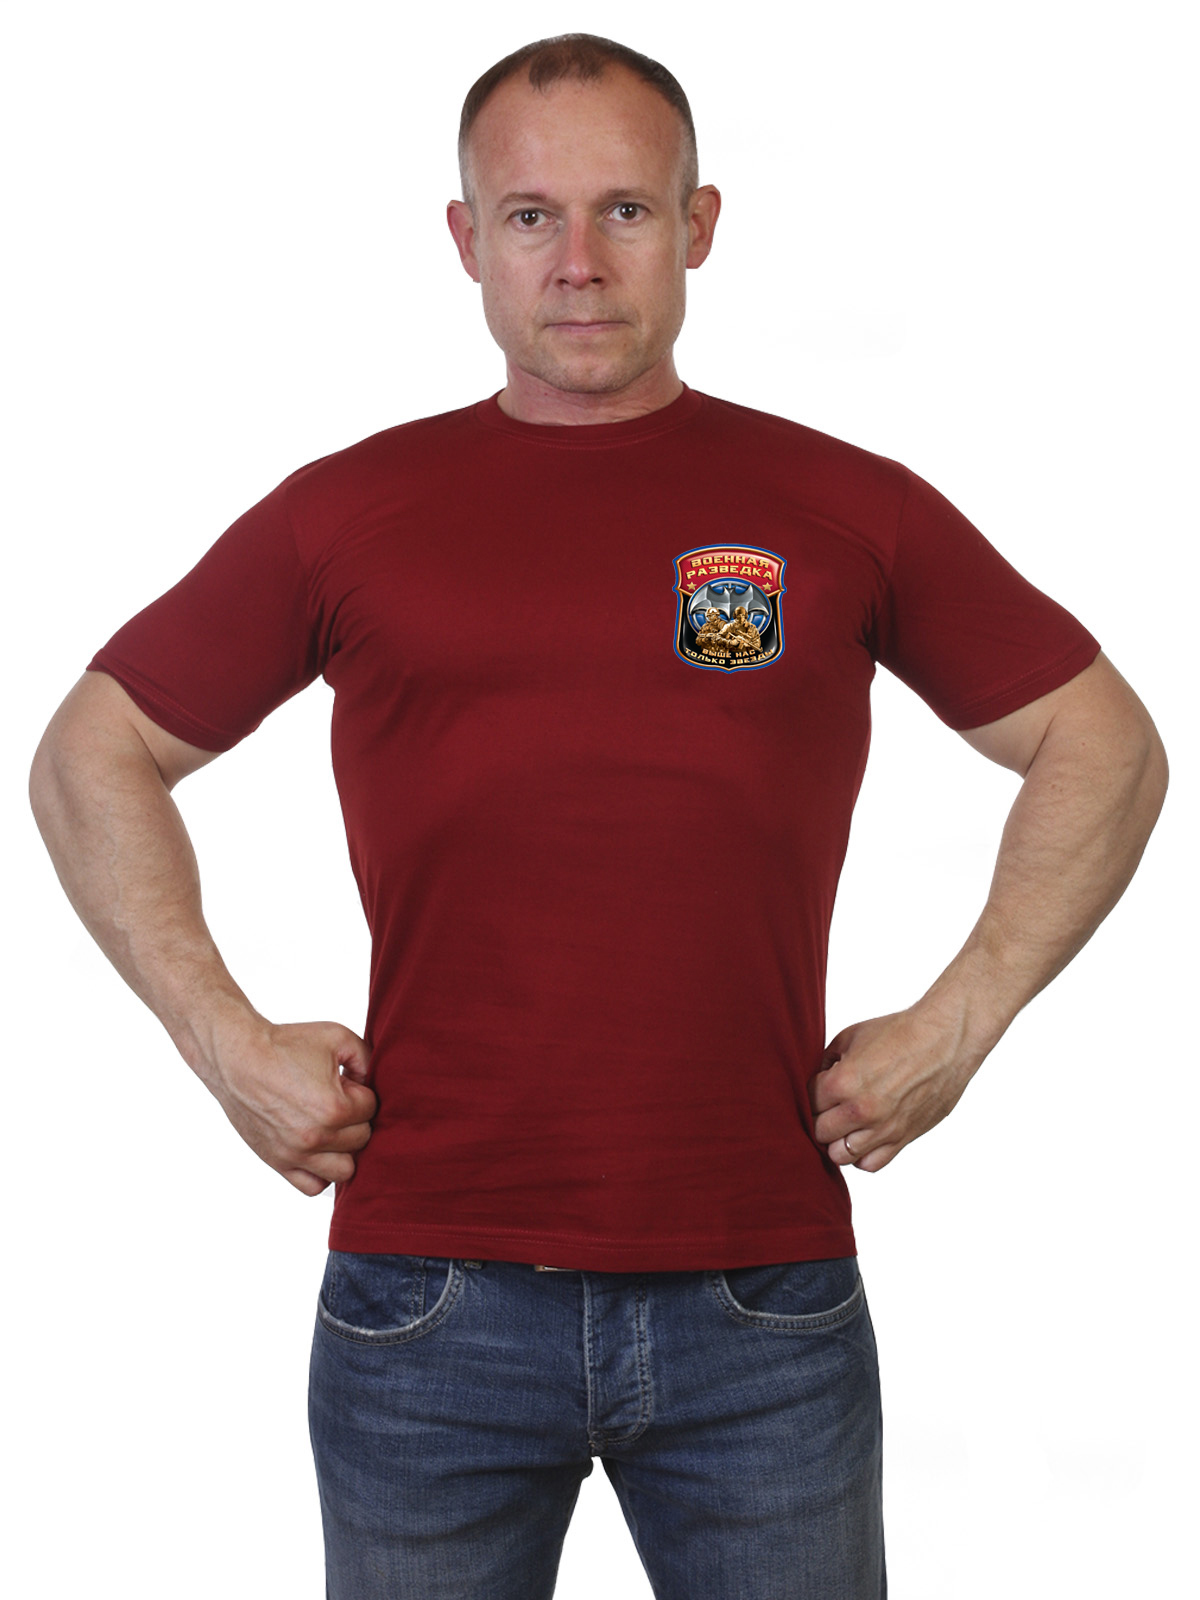 Мужская футболка с надписью Военная Разведка 